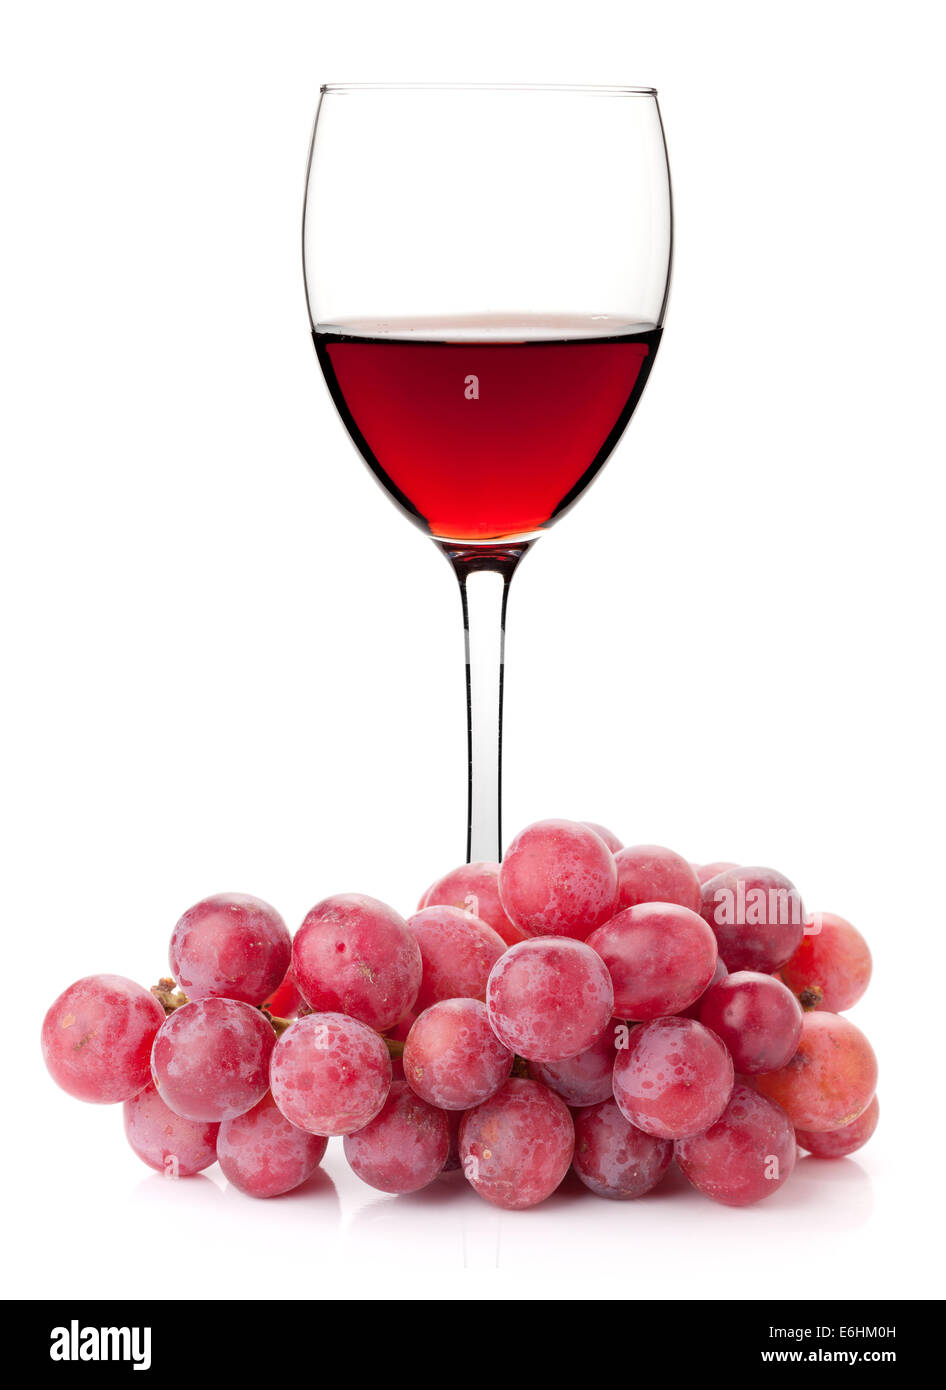 Vino rosato in vetro con uva rossa filiale. Isolato su sfondo bianco Foto Stock